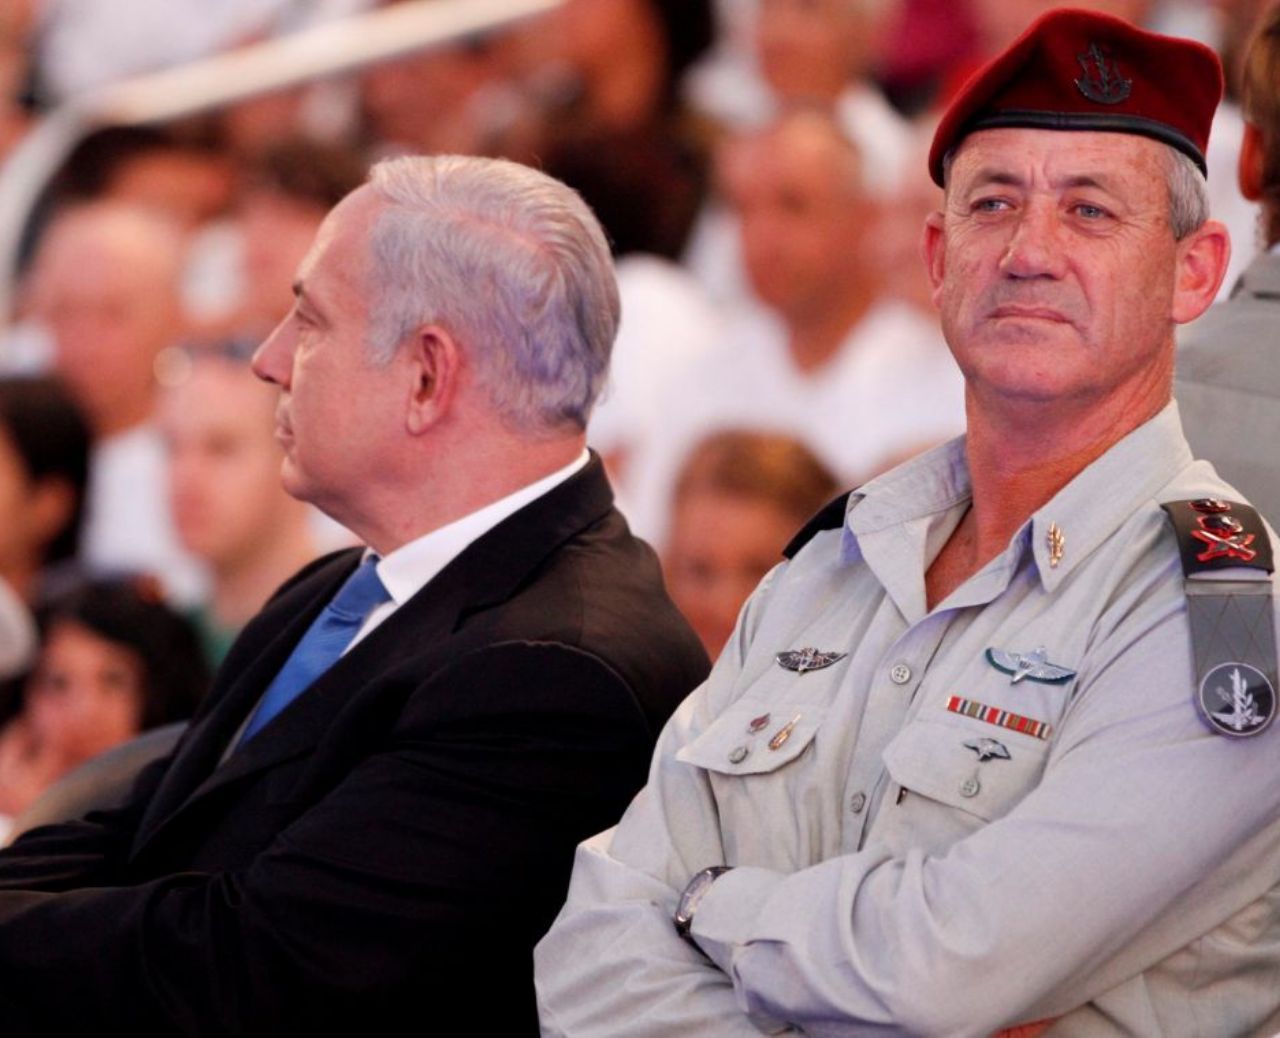 ادامه بن بست سیاسی در اسرائیل؛ نمایندگان پارلمان به برپایی انتخابات جدید رای دادند